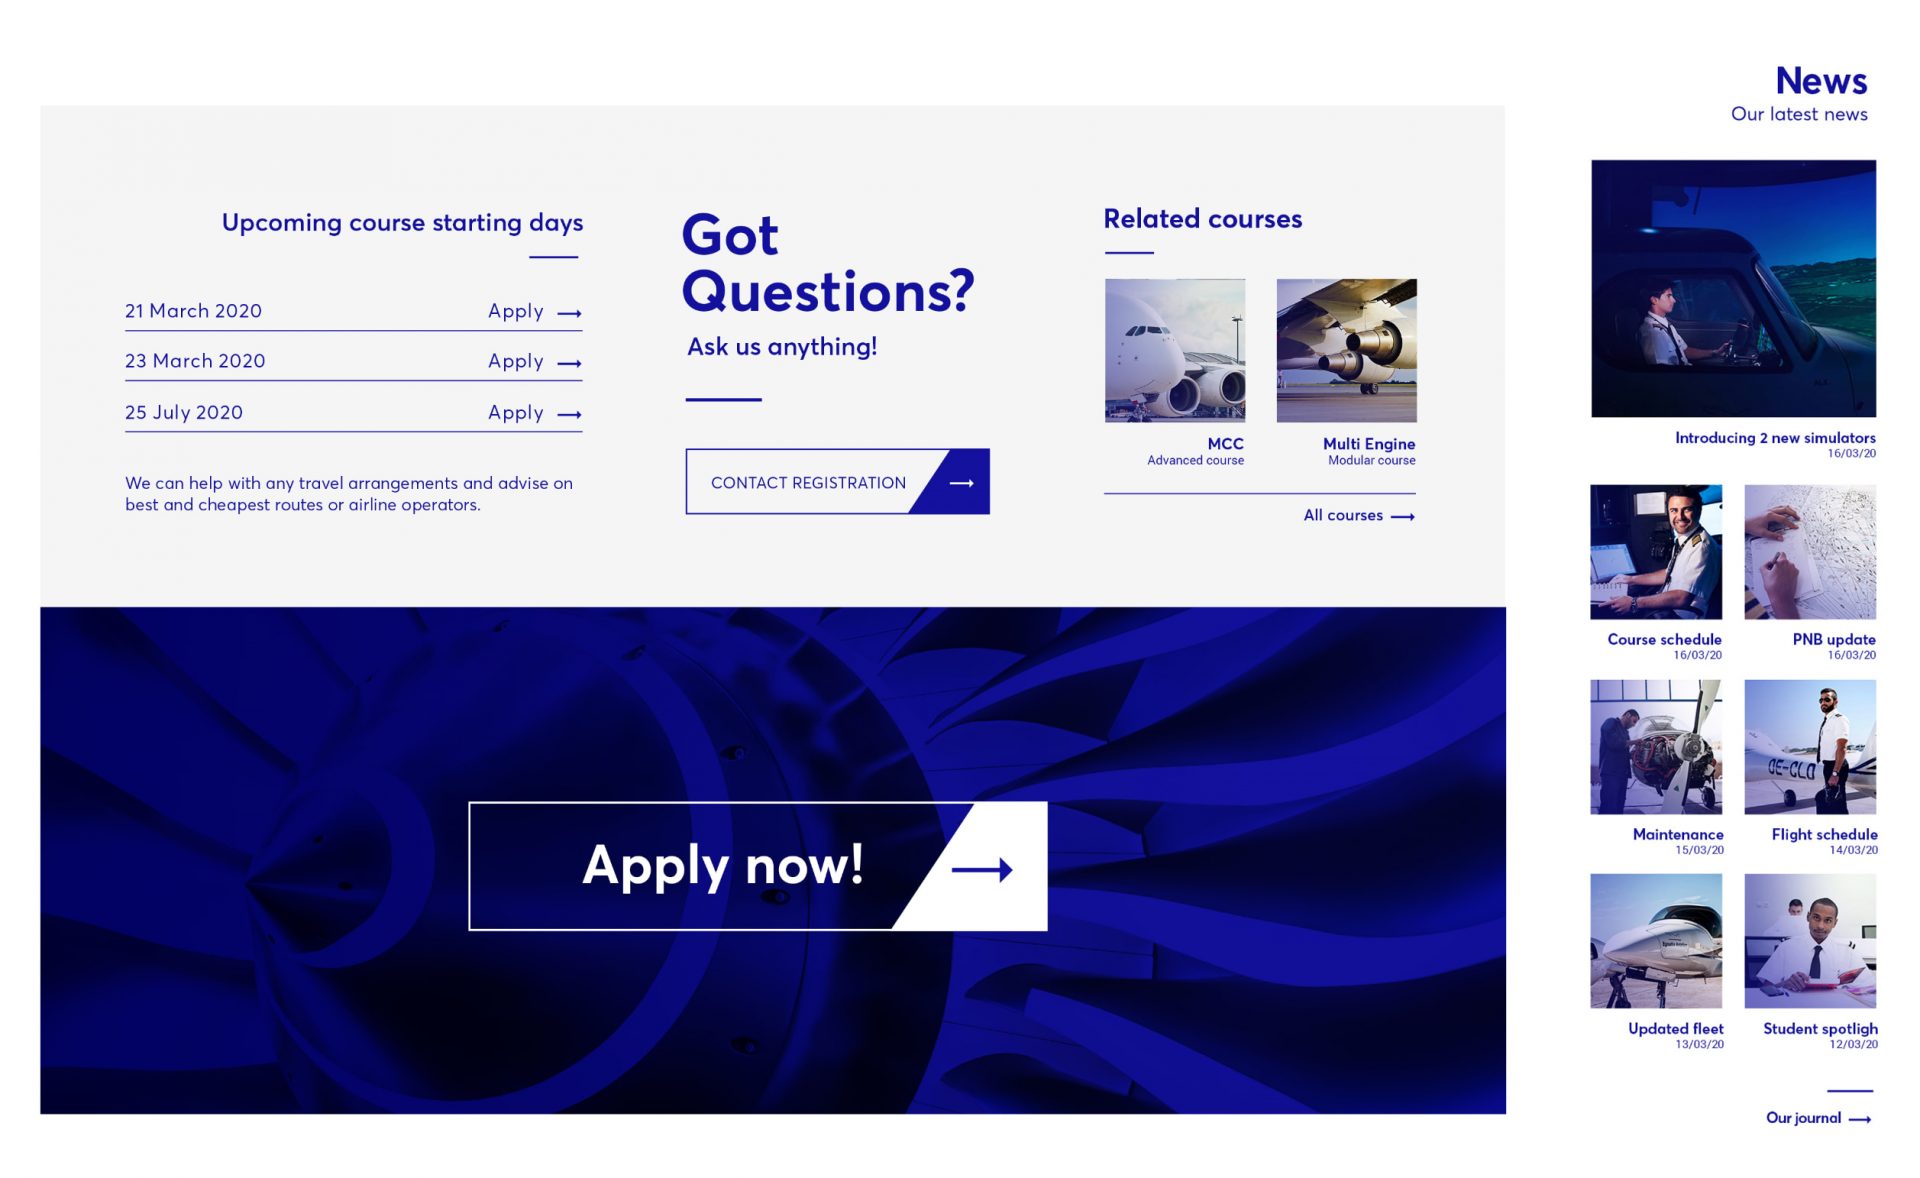 Σχεδίασμός ιστοσελίδας - Κατασκευή ιστοσελίδας - Egnatia Aviation - Σχολή πιλότων - Artware -Κατασκευή ιστοσελίδων